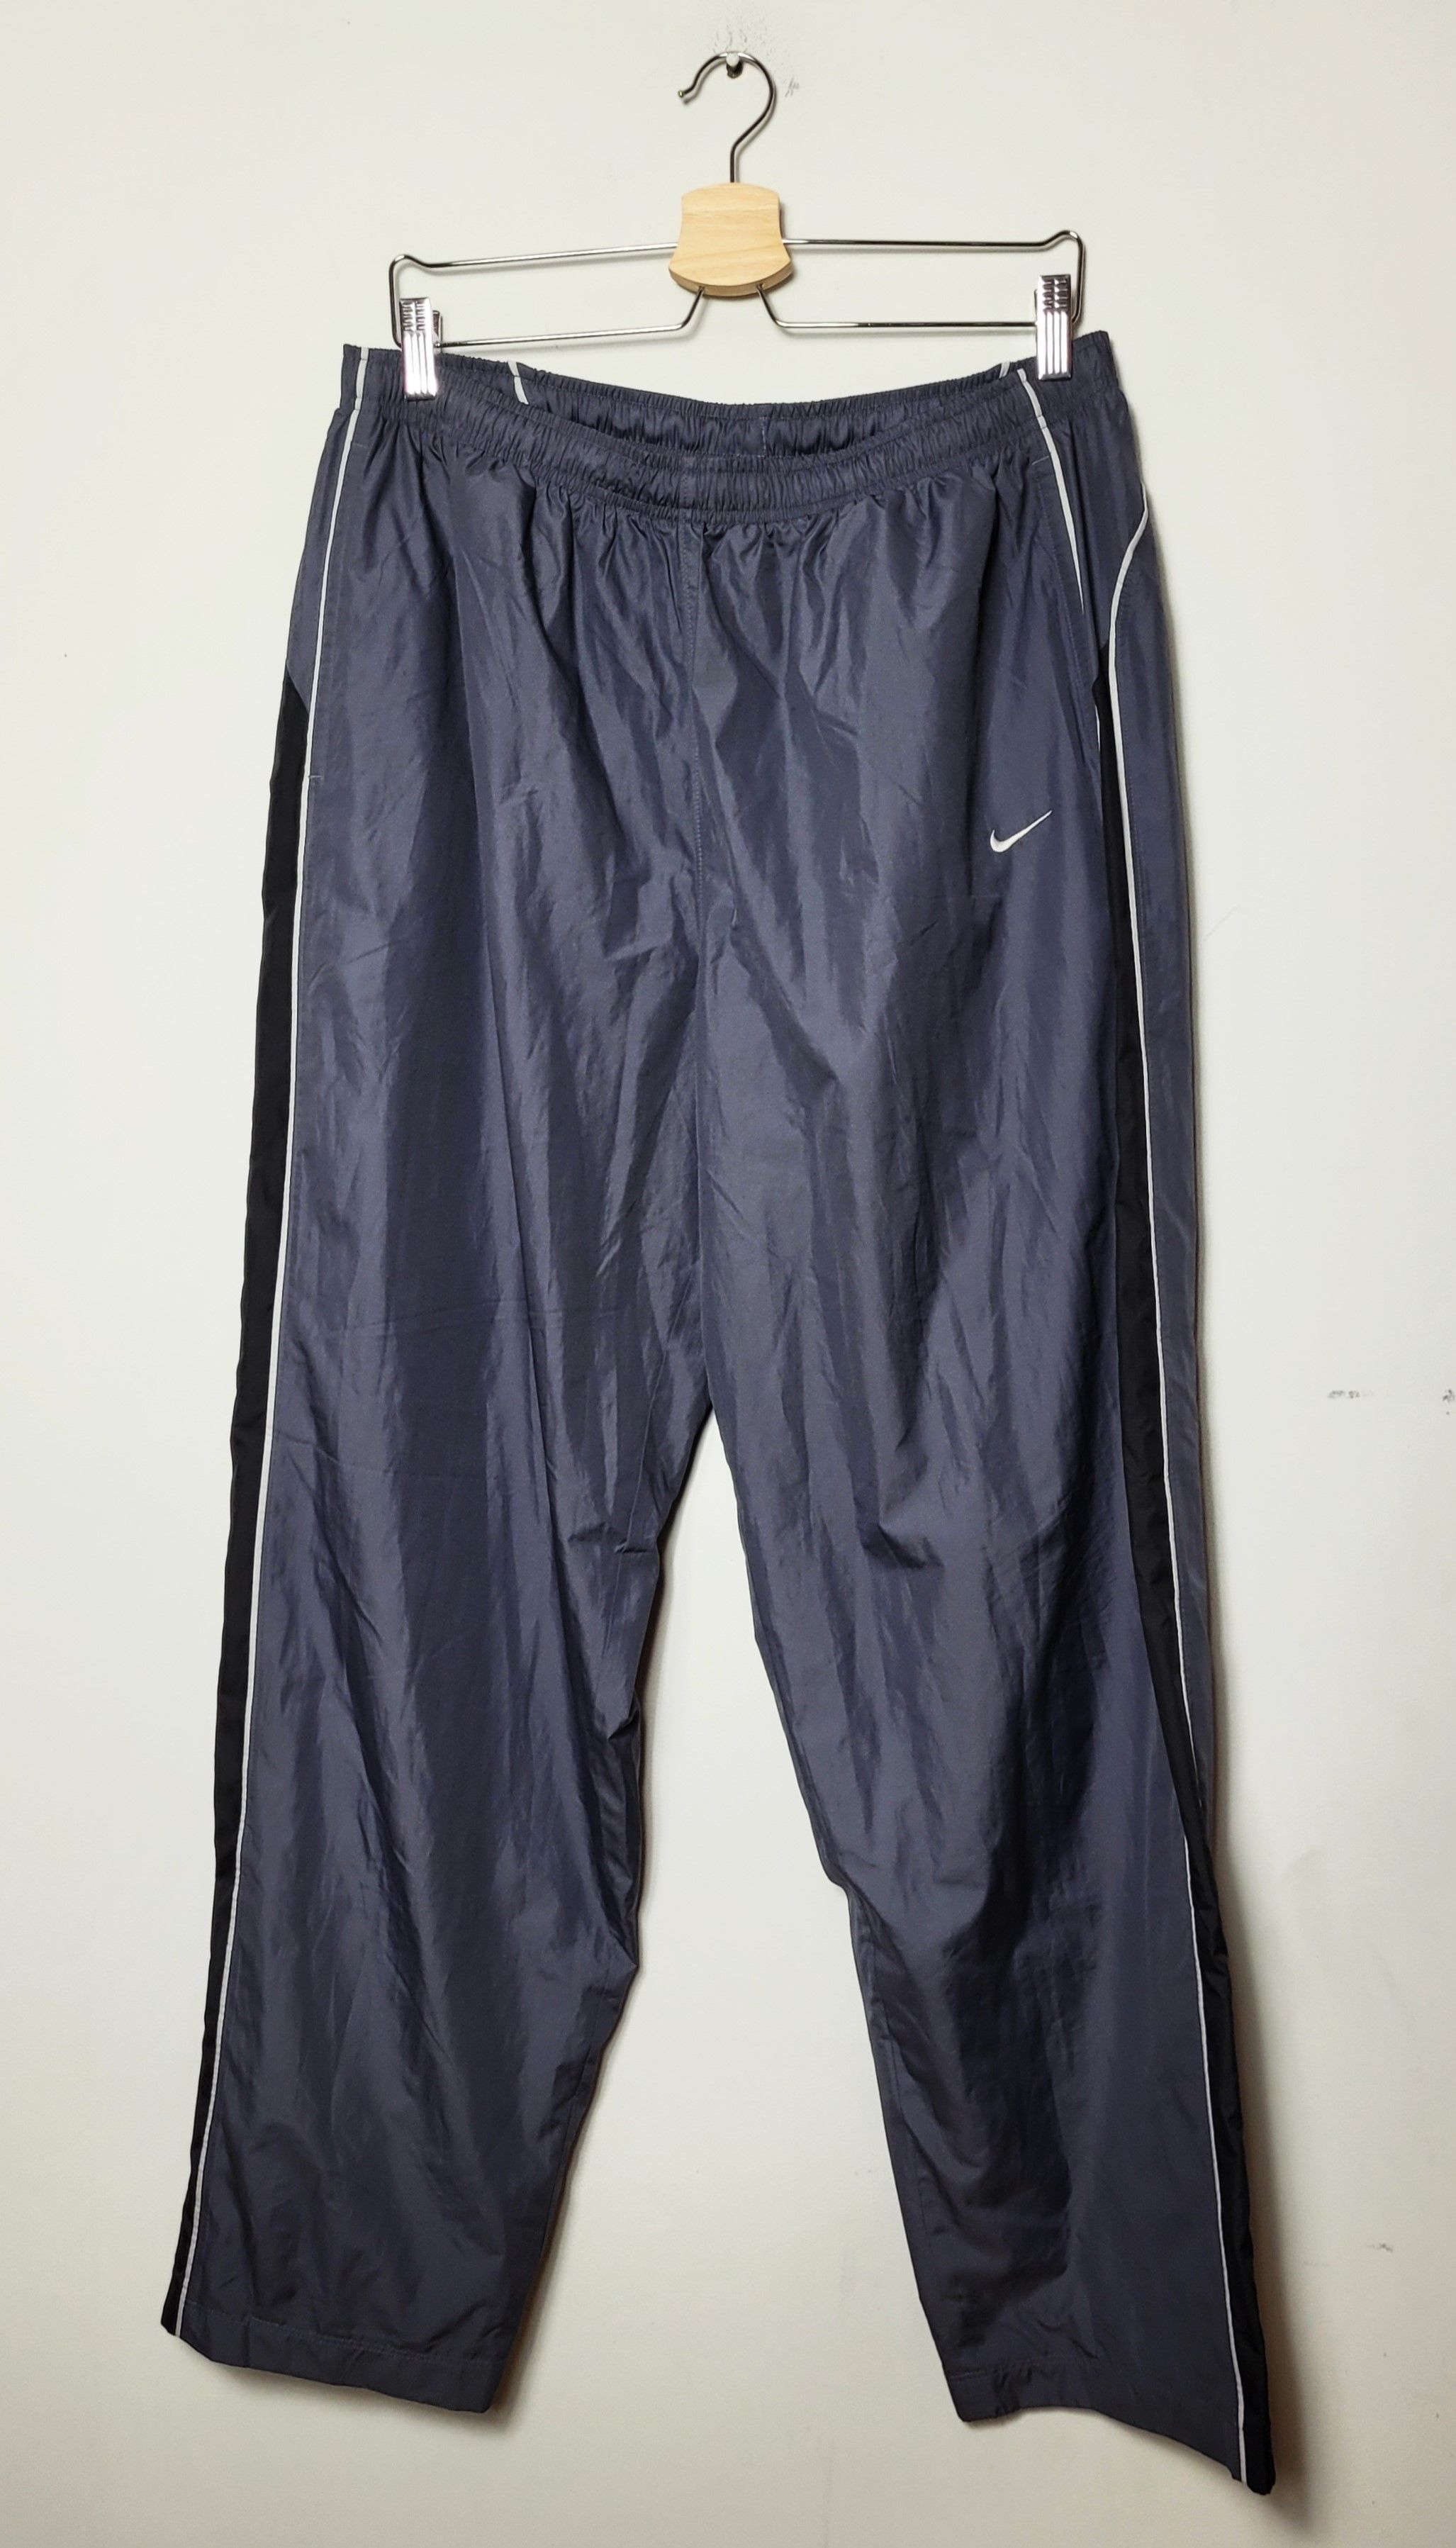 Nike Nike vintage nylon track pants 2000s